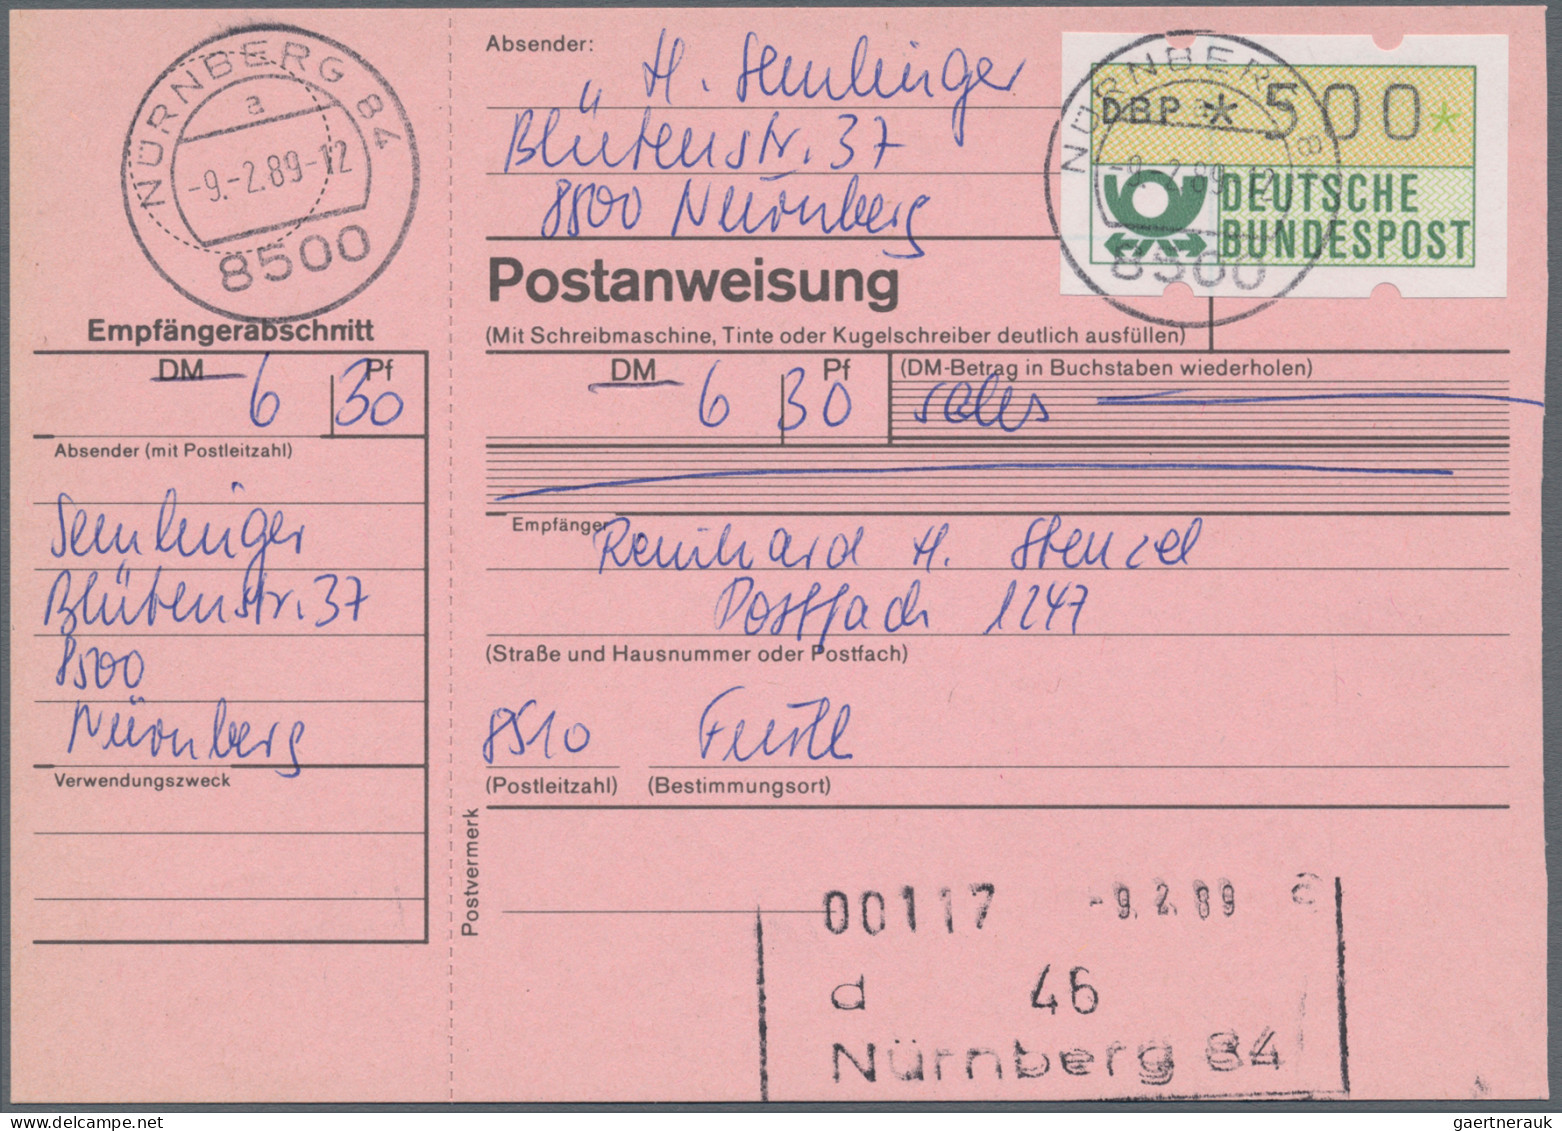 Bundesrepublik - Automatenmarken: 1981/2002, Interessanter Posten Für Den Automa - Machine Labels [ATM]